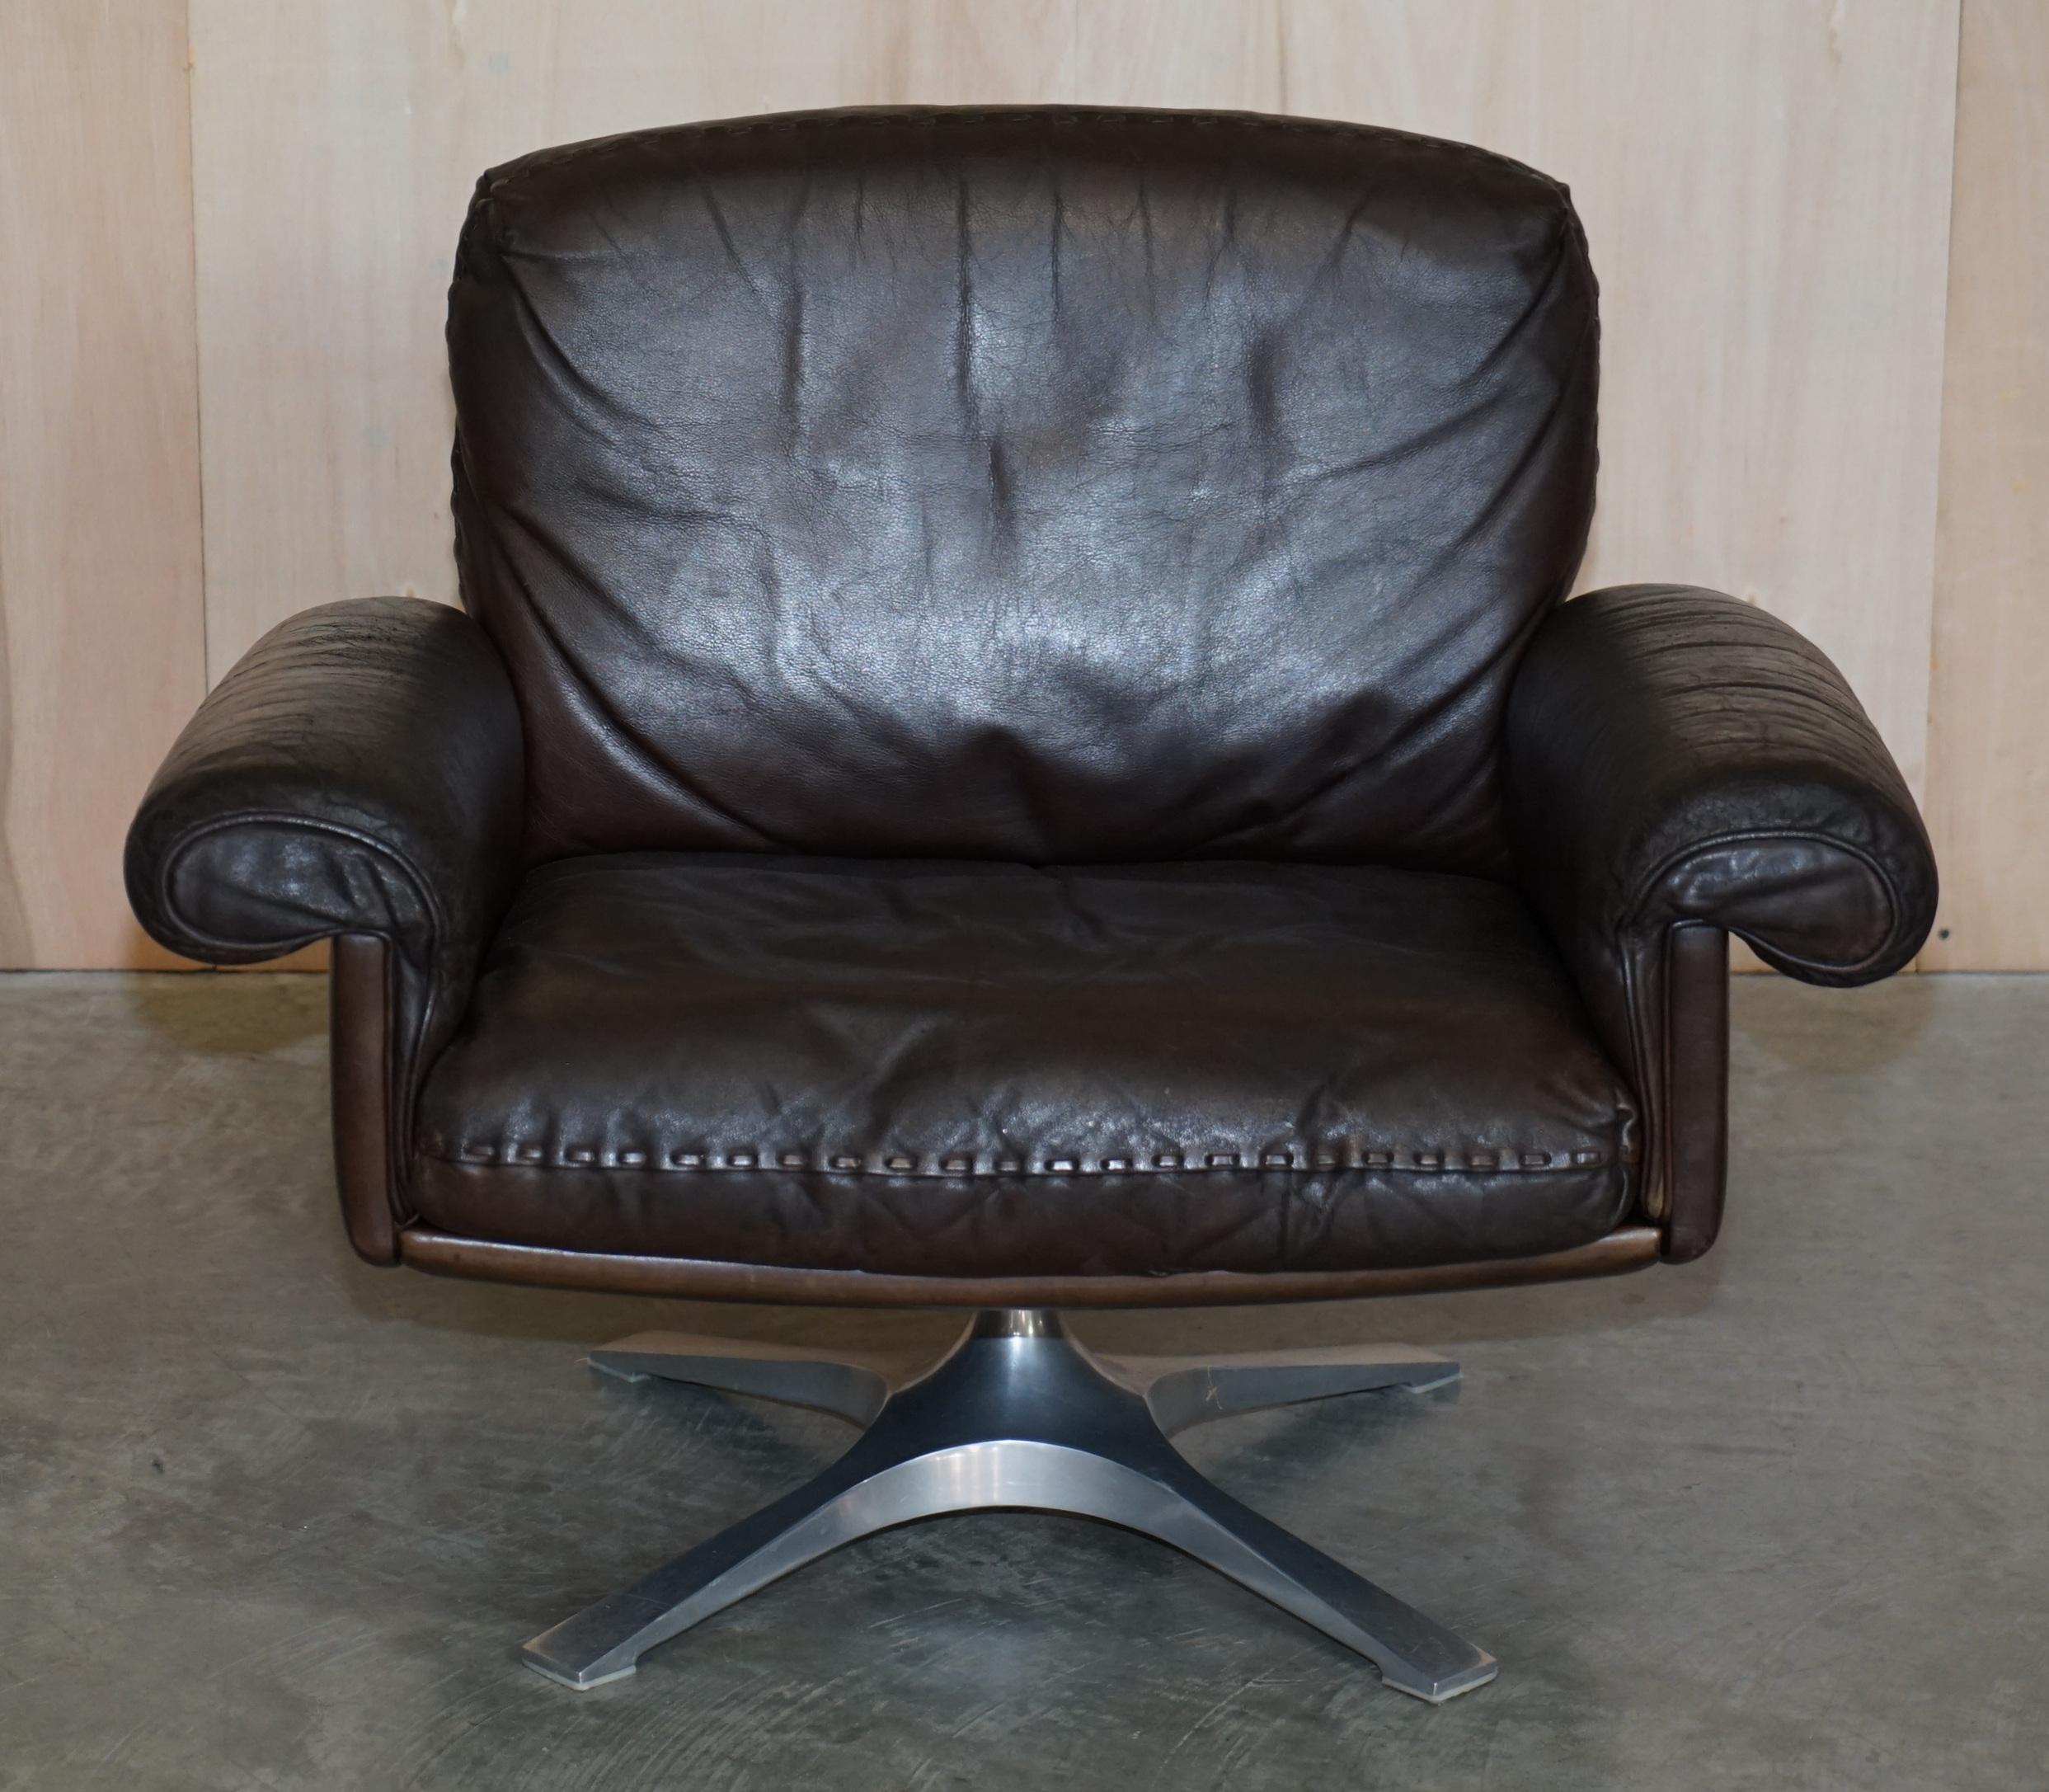 Wir freuen uns, diesen schönen Vintage Mid-Century Modern ca. 1960's De Sede DS-35 Drehsessel mit dem frühen Prototyp Basis zum Verkauf anbieten

Ein wahrhaft kultiger und superbequemer Sessel, hergestellt von den Stil-Gurus und De Sede. Der DS-35